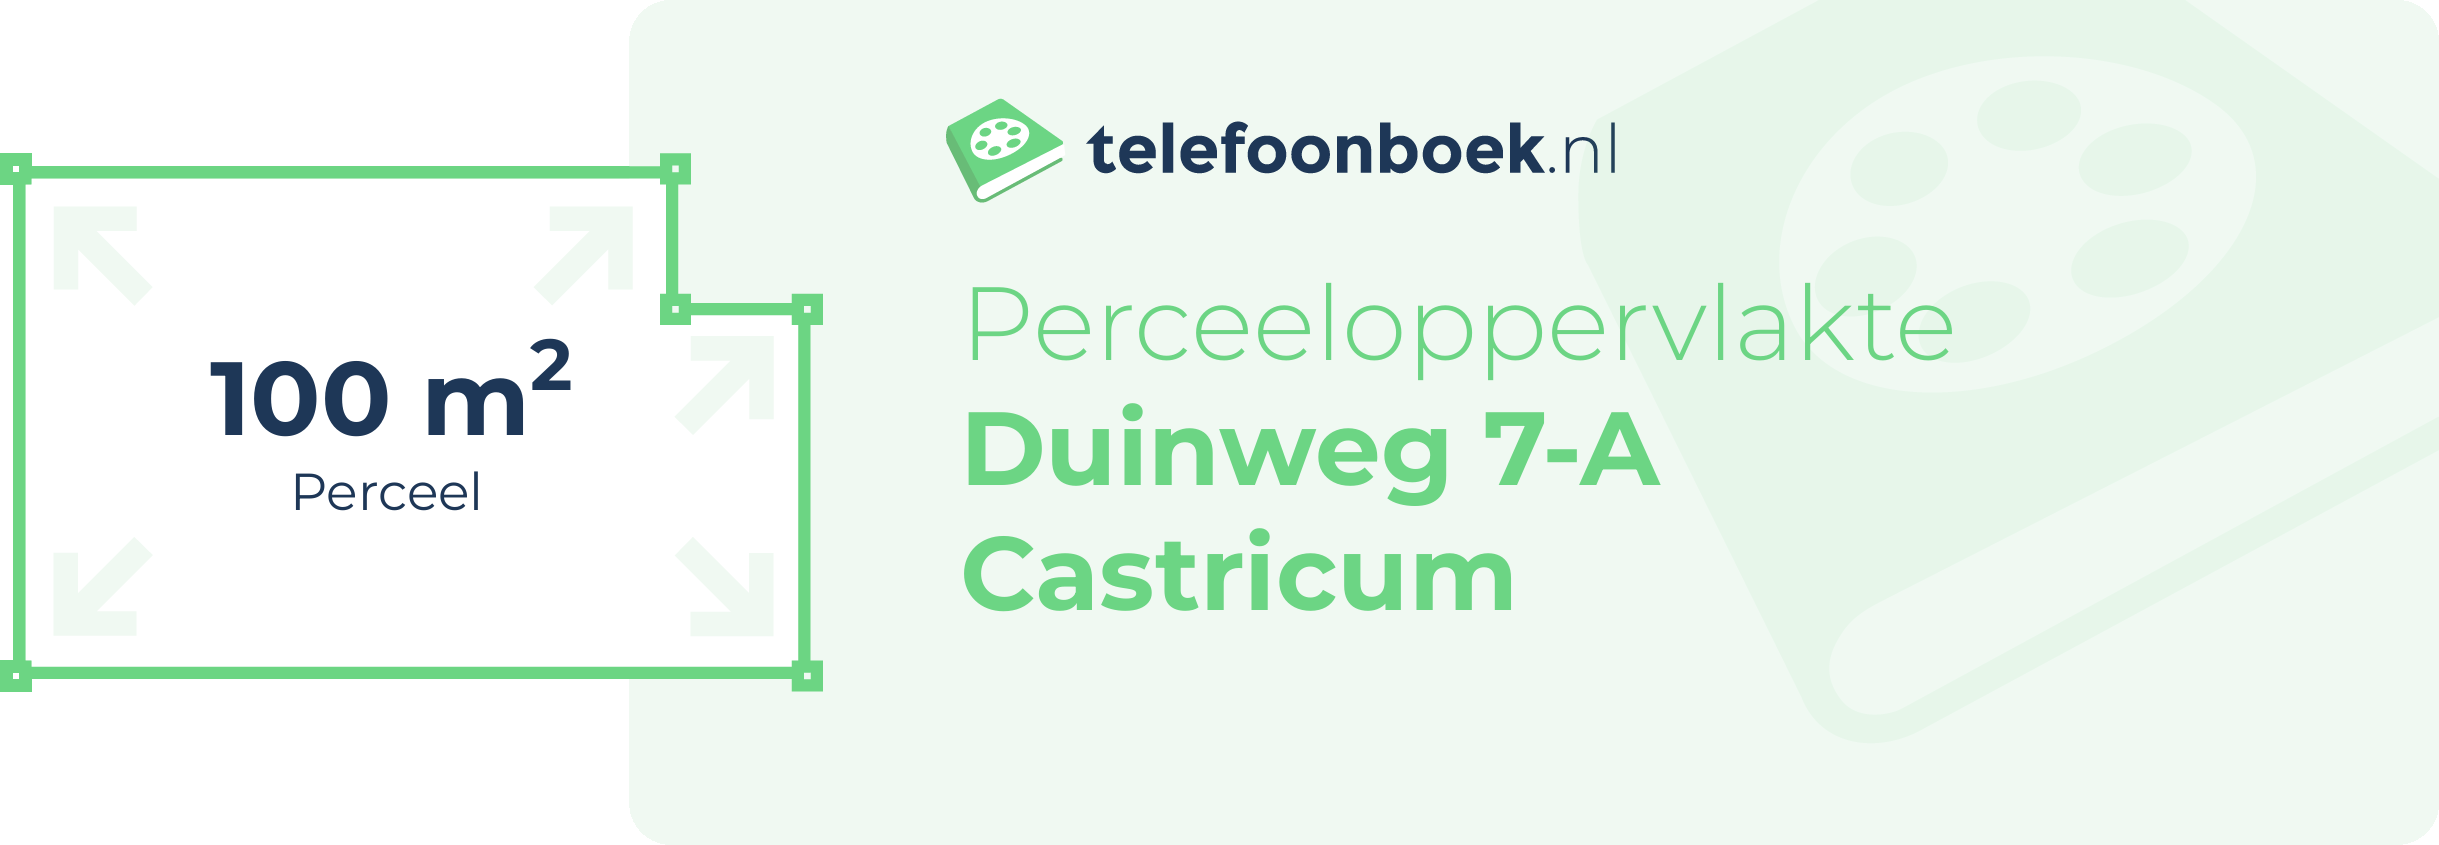 Perceeloppervlakte Duinweg 7-A Castricum